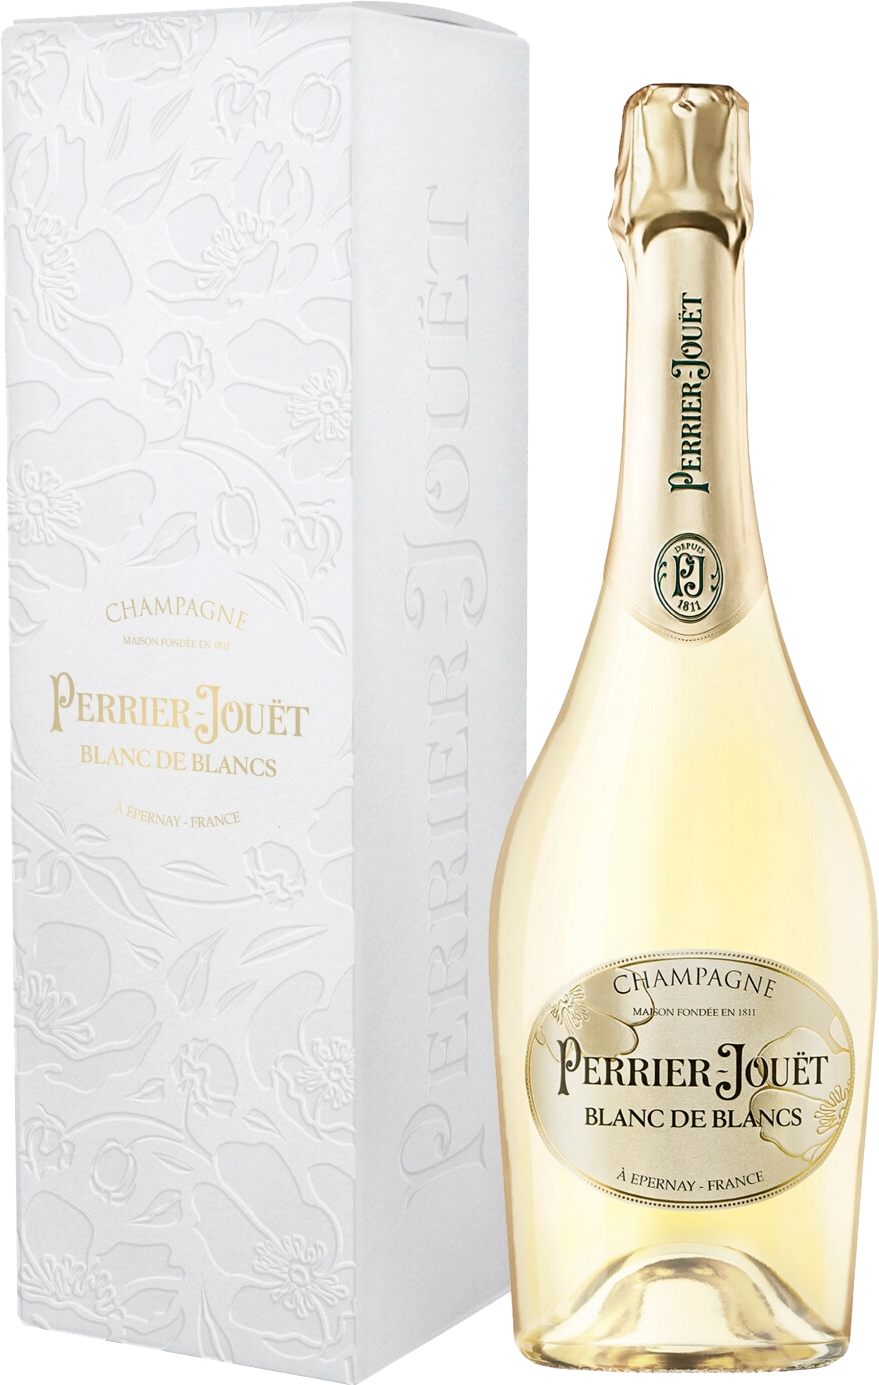 Perrier-Jouet Blanc De Blancs Champagne AOC Brut (gift box) r de ruinart brut champagne aoc gift box